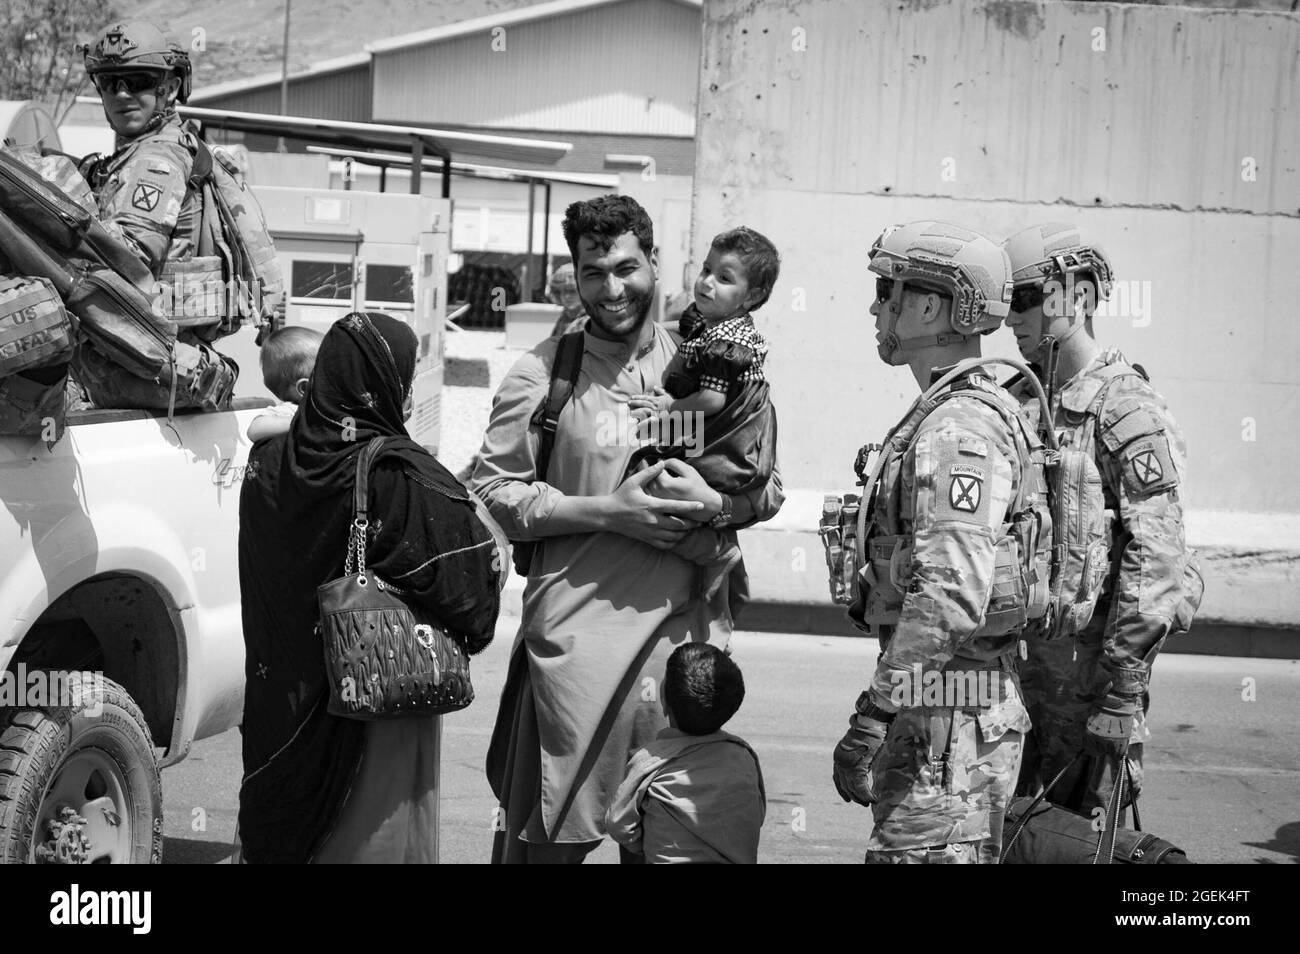 Soldaten der 10. Bergdivision eskortieren Evakuierte am Hamid Karzai International Airport, Afghanistan, August 20. US-Dienstmitglieder unterstützen das Außenministerium bei einer nicht-kämpferischen Evakuierungsoperation (NEO) in Afghanistan. (USA Marine Corps Foto von CPL. Davis Harris) Stockfoto